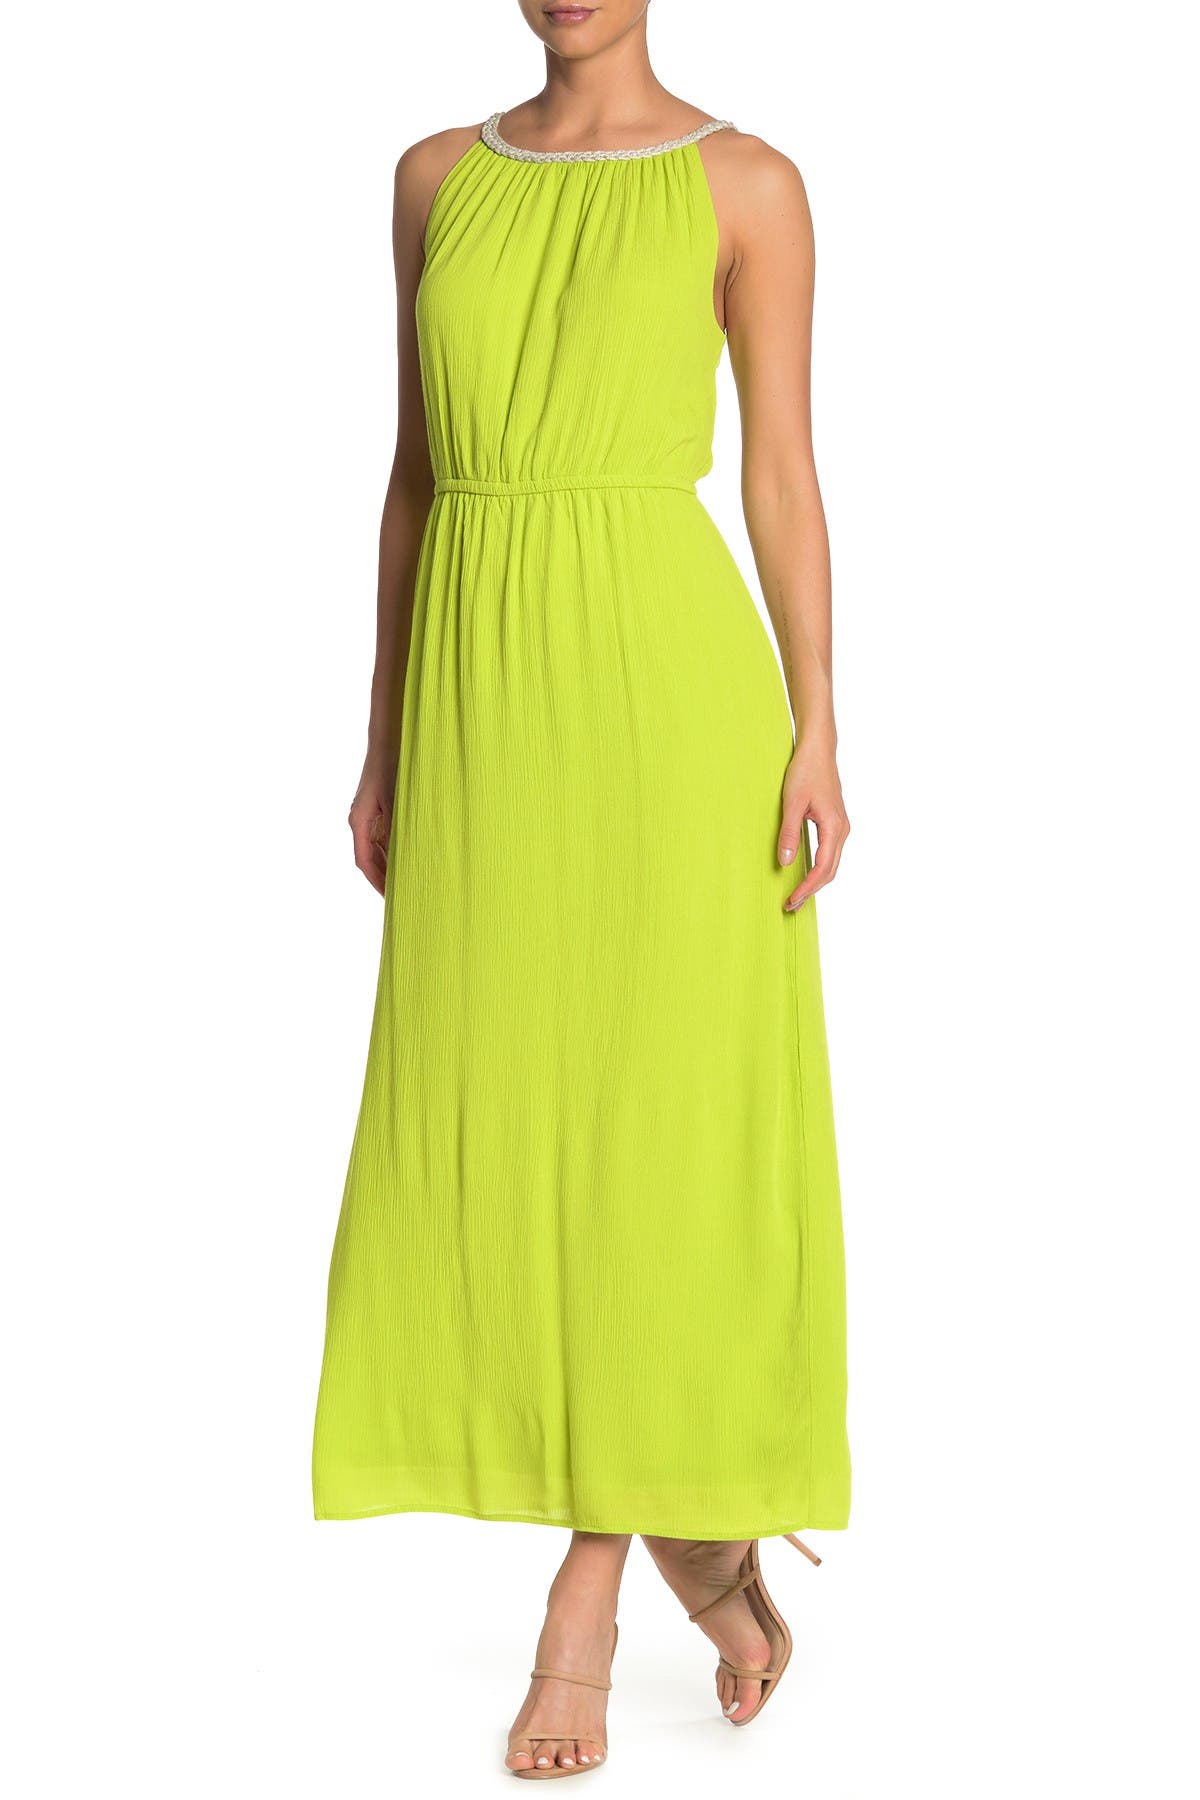 Nina Leonard Braided Neck Sleeveless Maxi Dress In Bright Moss